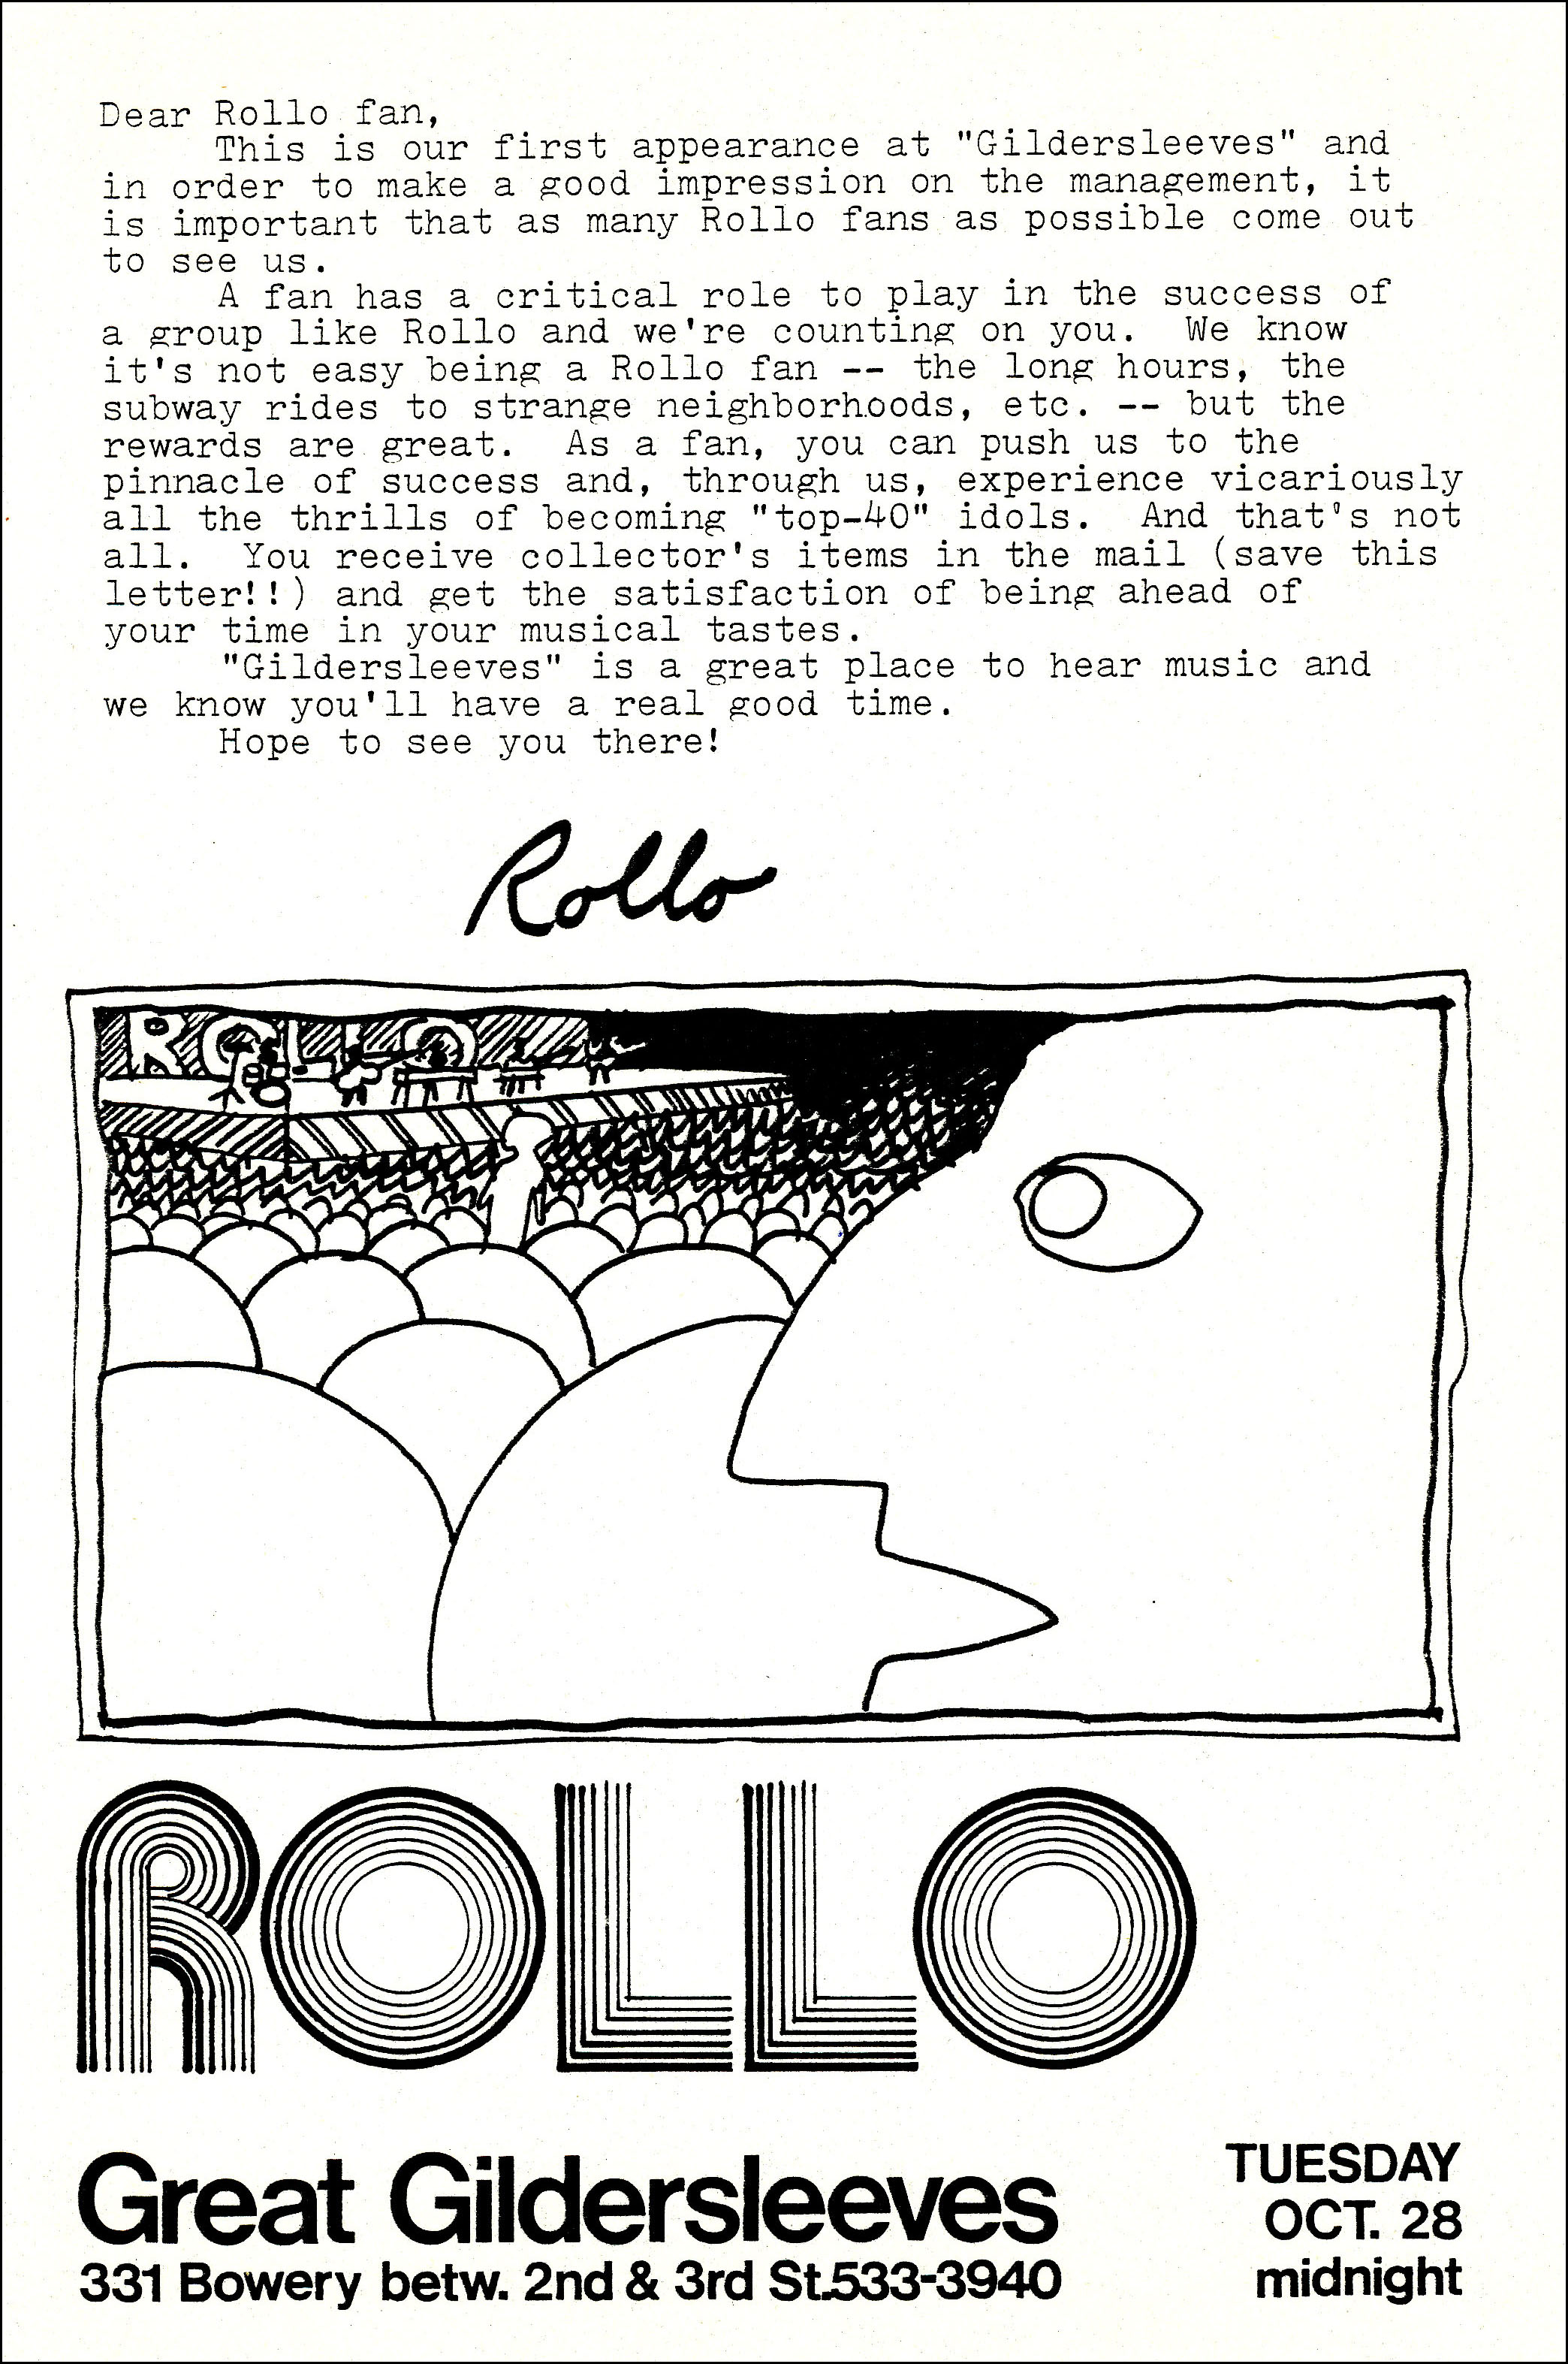 Rollo letter for Great Gildersleeves for 10-28-1980 performance.